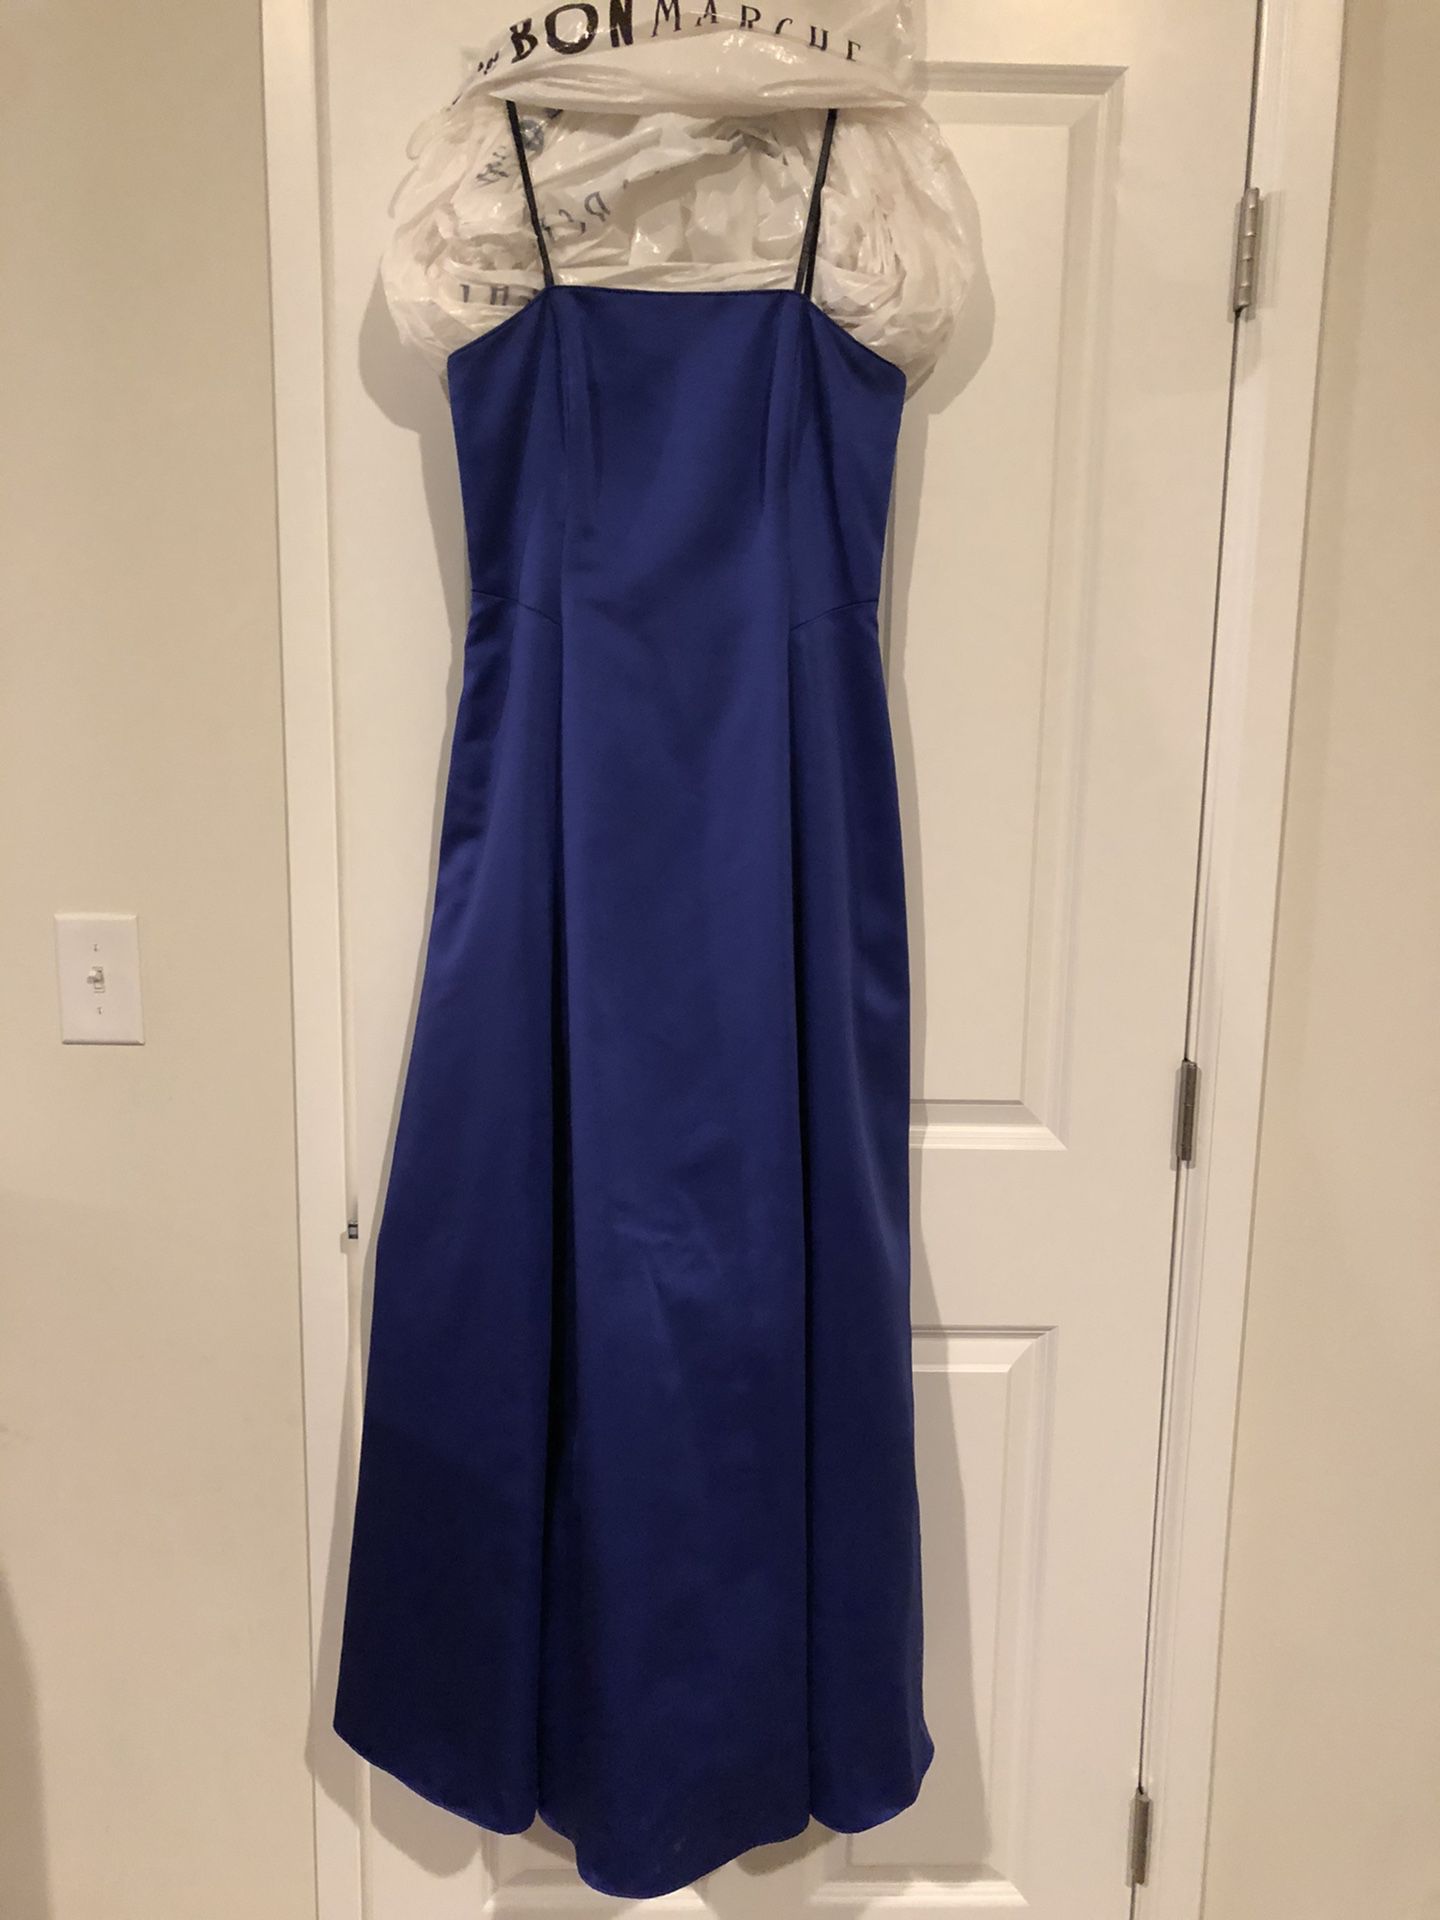 Royal blue dress size 10P